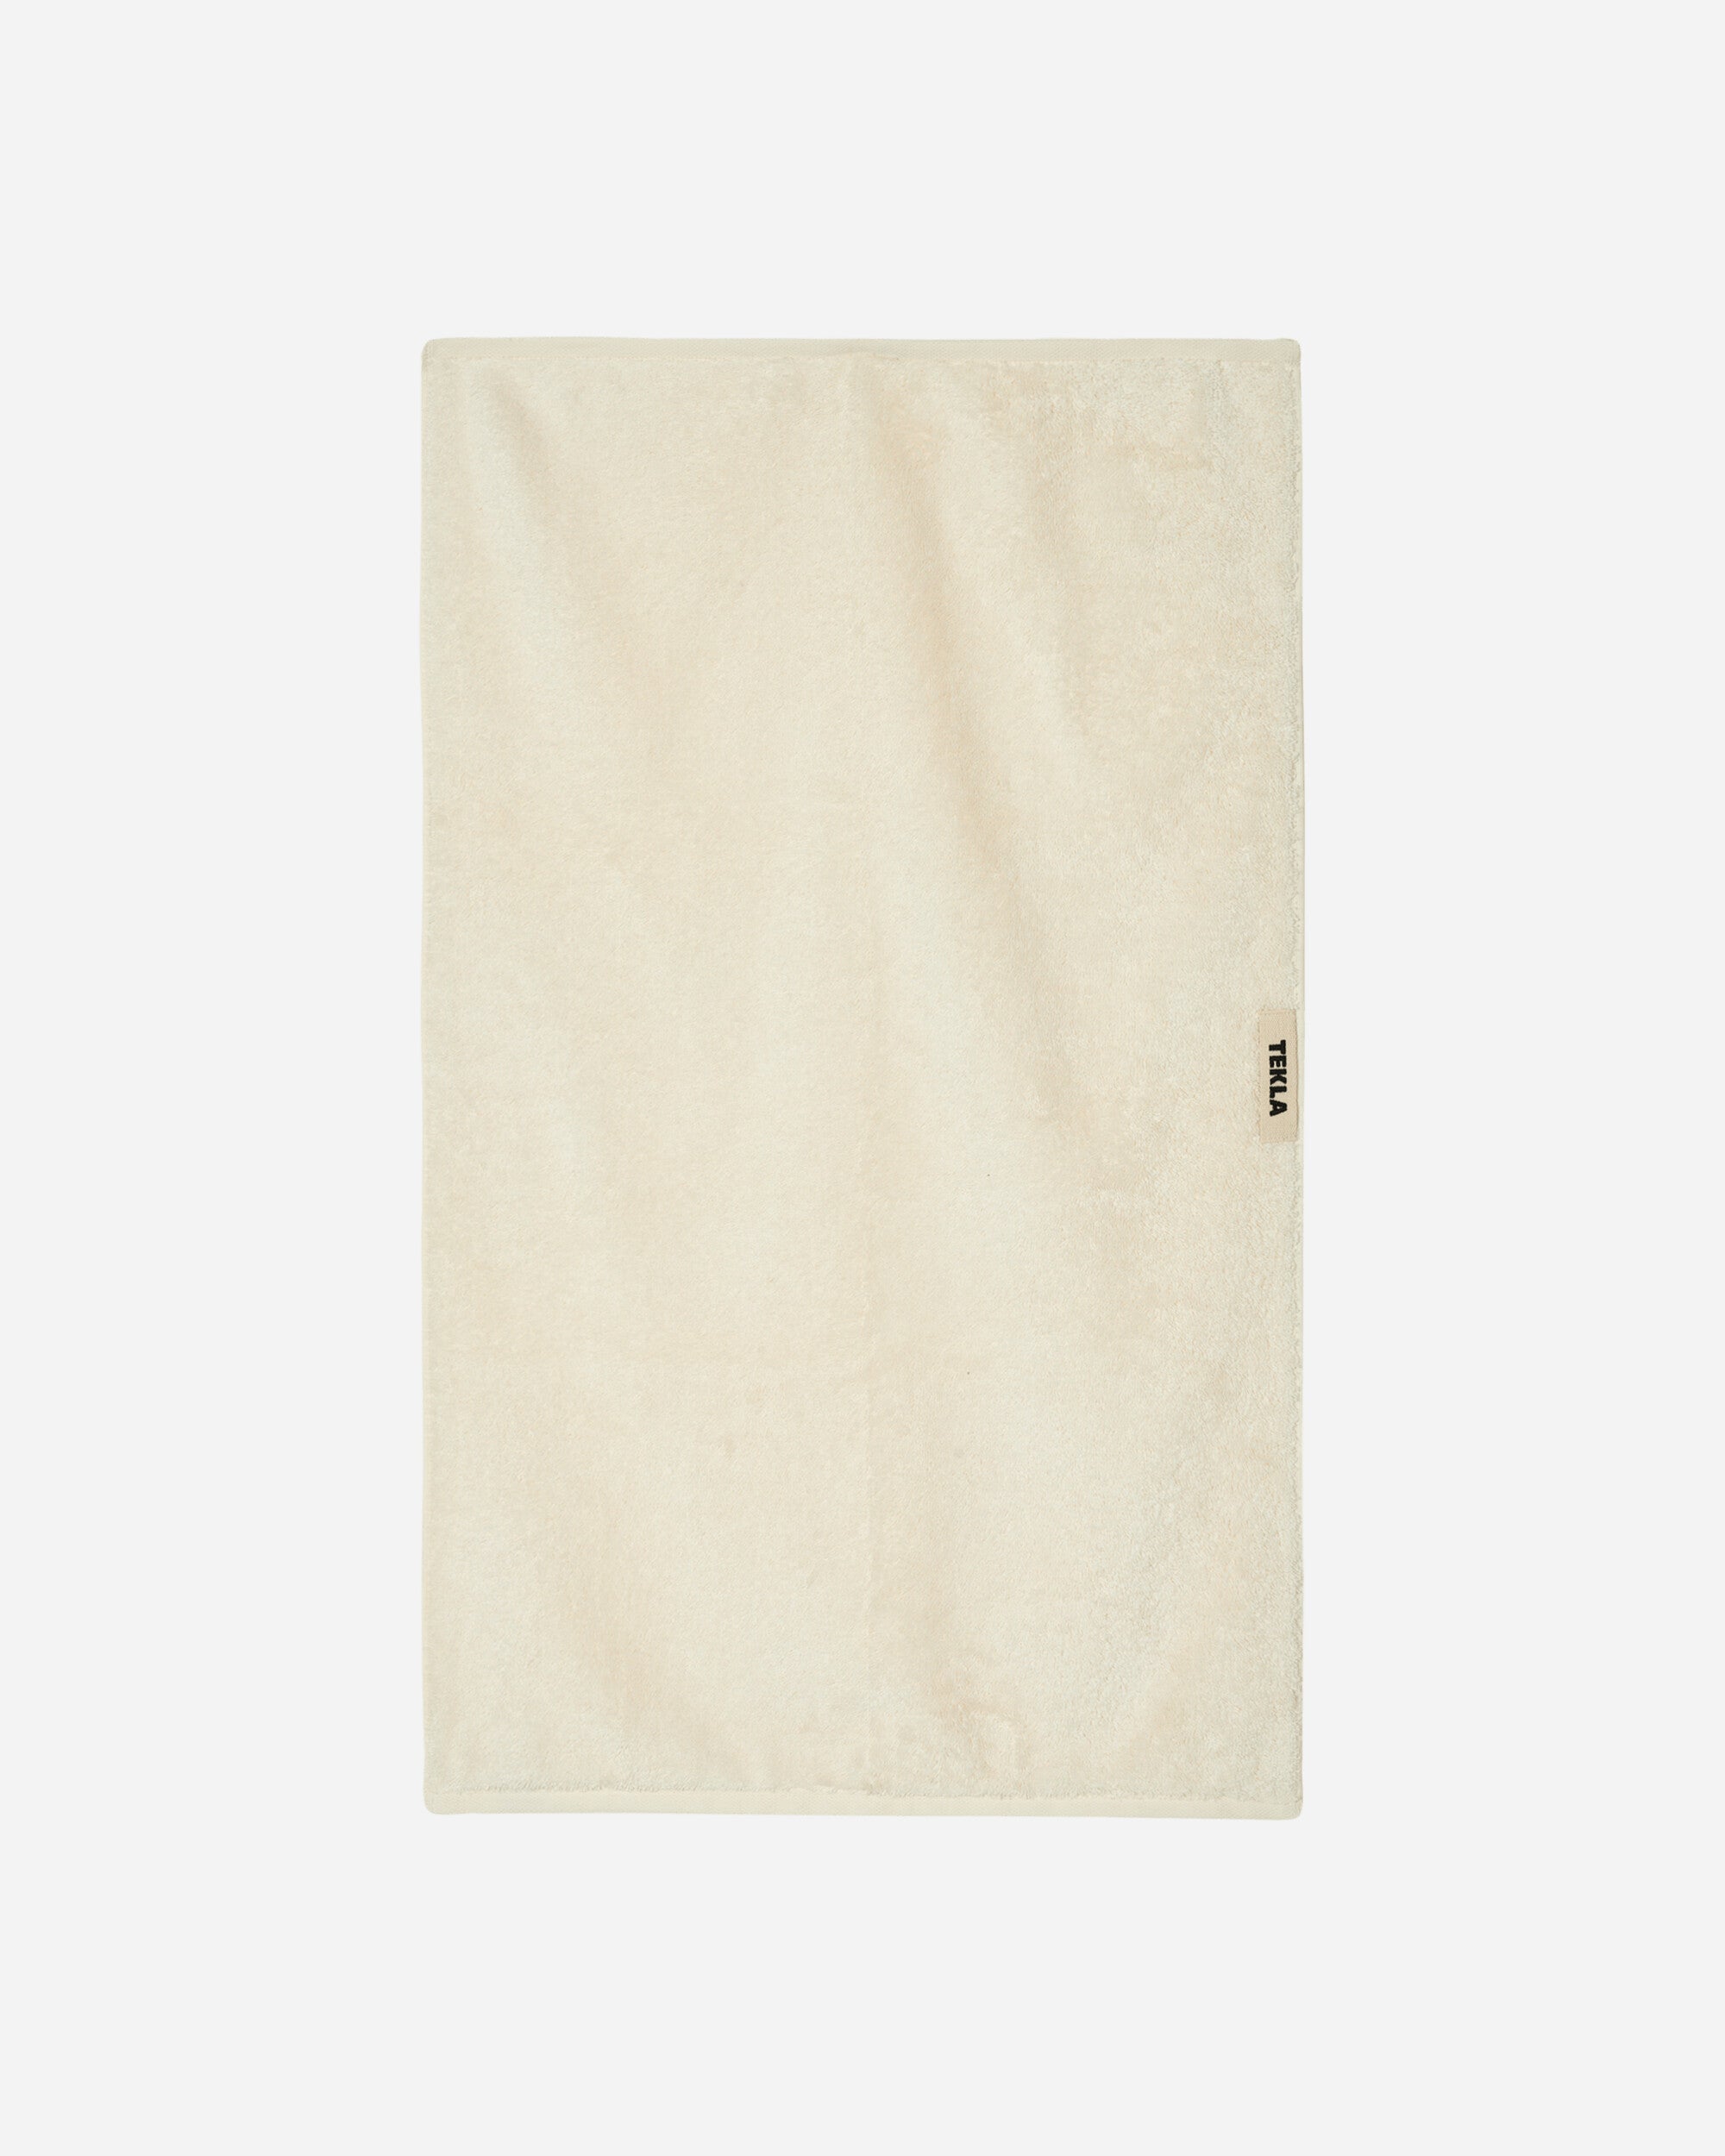 Tekla Hand Towel Ivory Textile Bath Towels TT-IV-50x80 IV